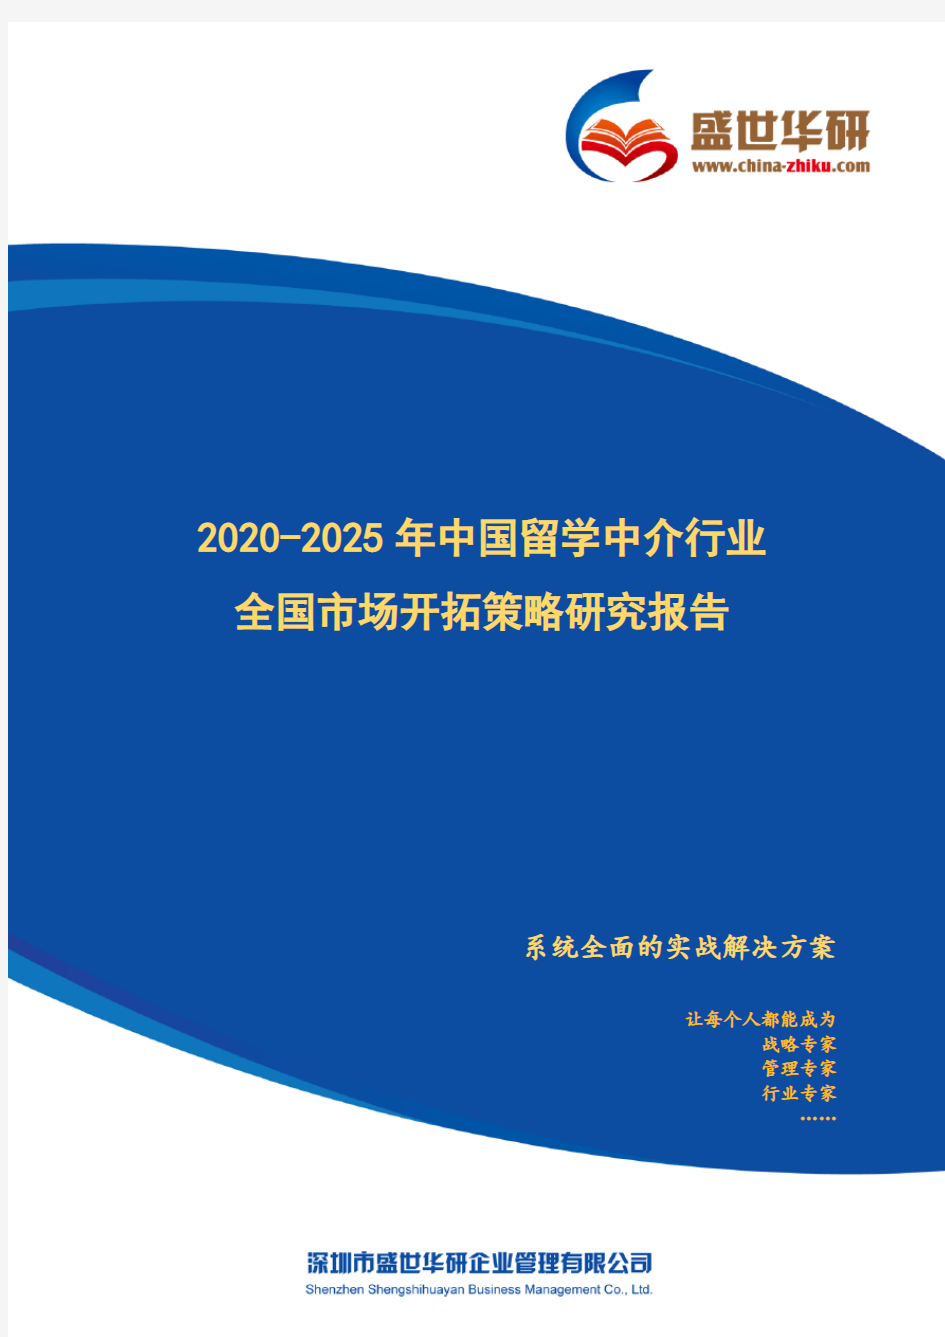 【完整版】2020-2025年中国留学中介行业全国市场开拓策略研究报告